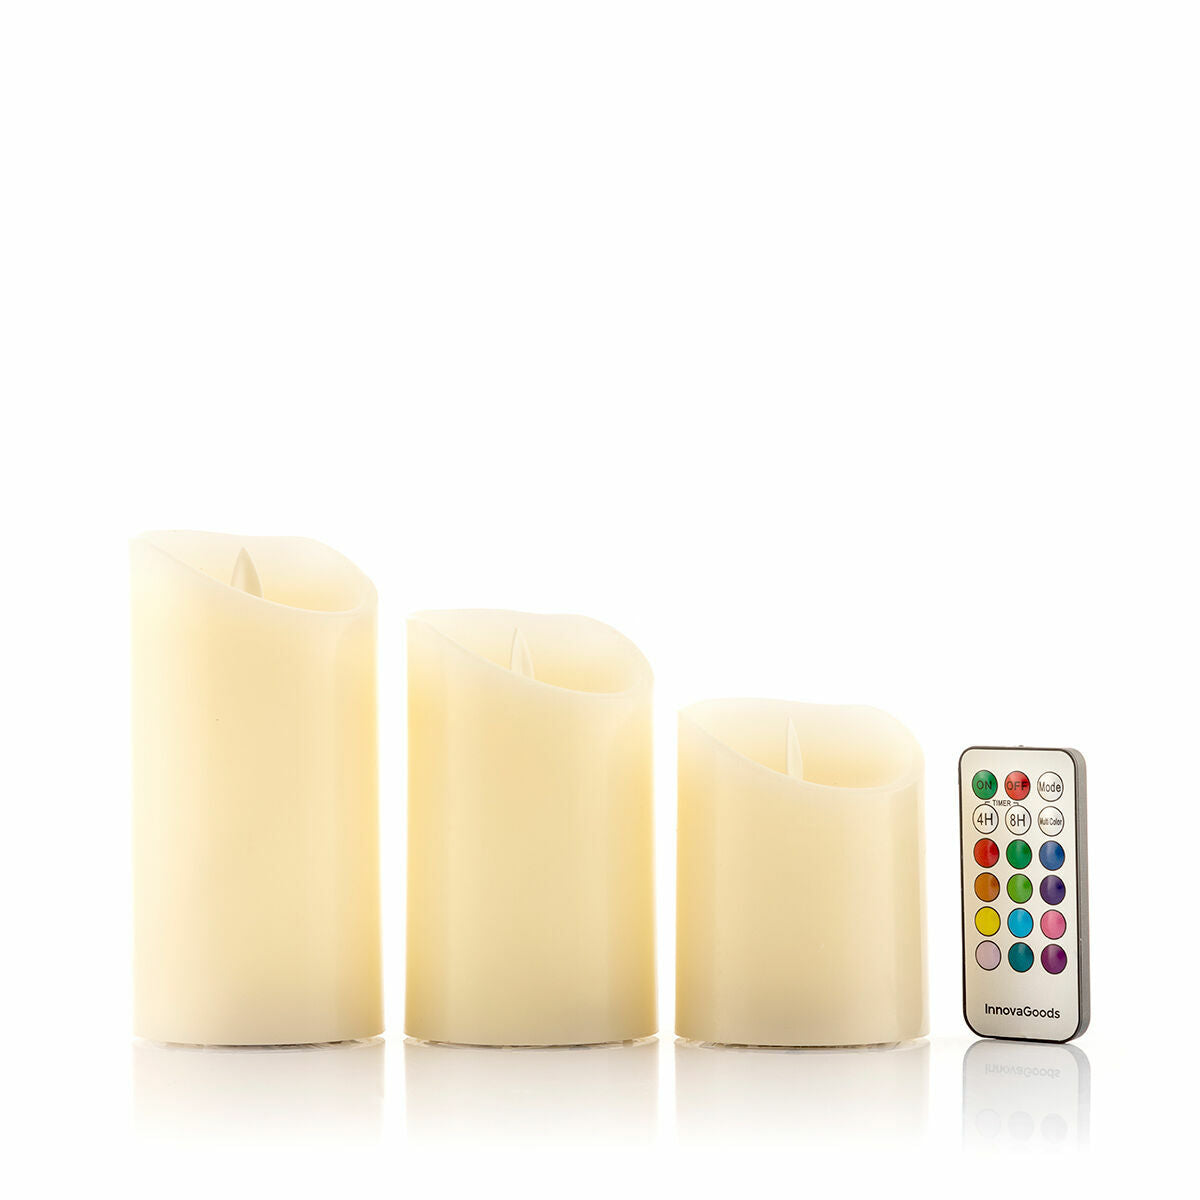 Kaufe Mehrfarbige LED-Kerzen Flammeneffekt mit Fernbedienung Lendles InnovaGoods 3 Stück bei AWK Flagship um € 35.00